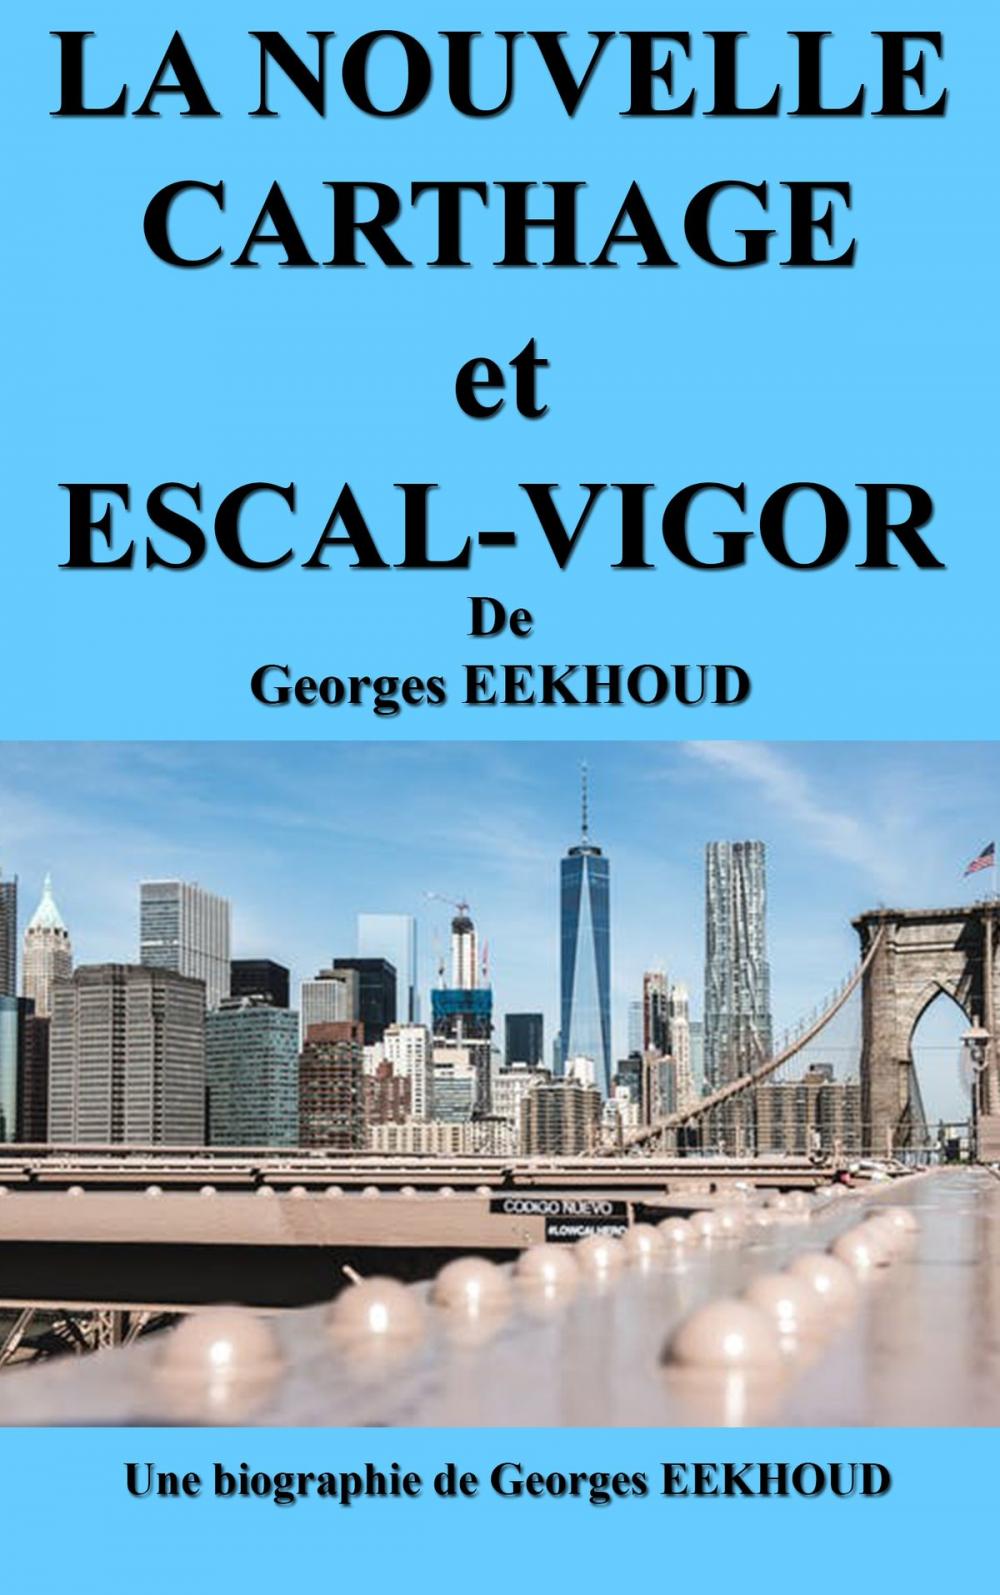 Big bigCover of LA NOUVELLE CARTHAGE et ESCAL-VIGOR